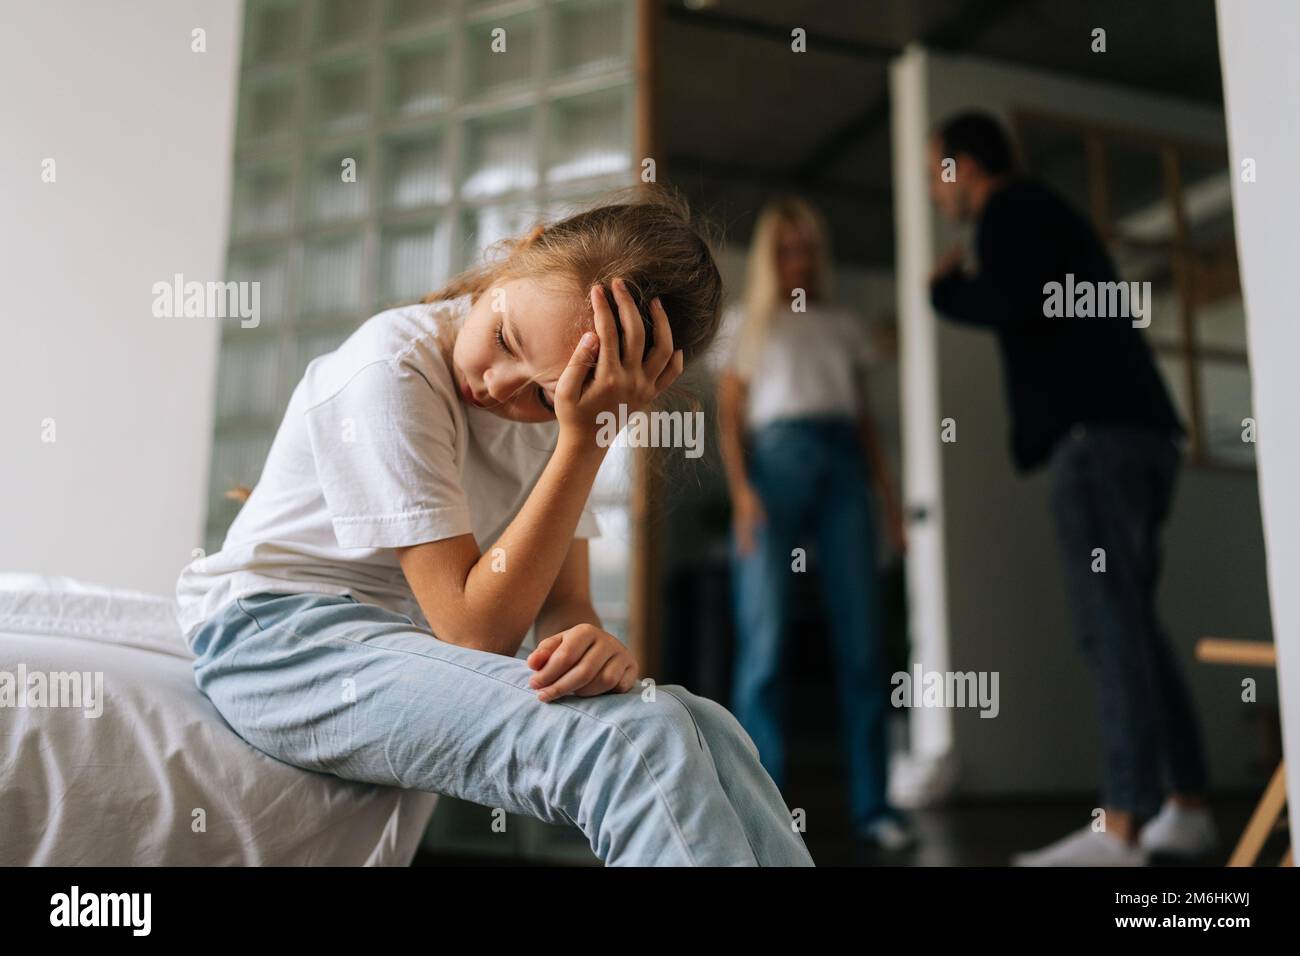 Vorderansicht eines traurigen, einsamen kleinen Mädchens, das wegsieht, weinend leidend auf dem Sofa sitzt, während Eltern sich streiten und im Wohnzimmer streiten Stockfoto